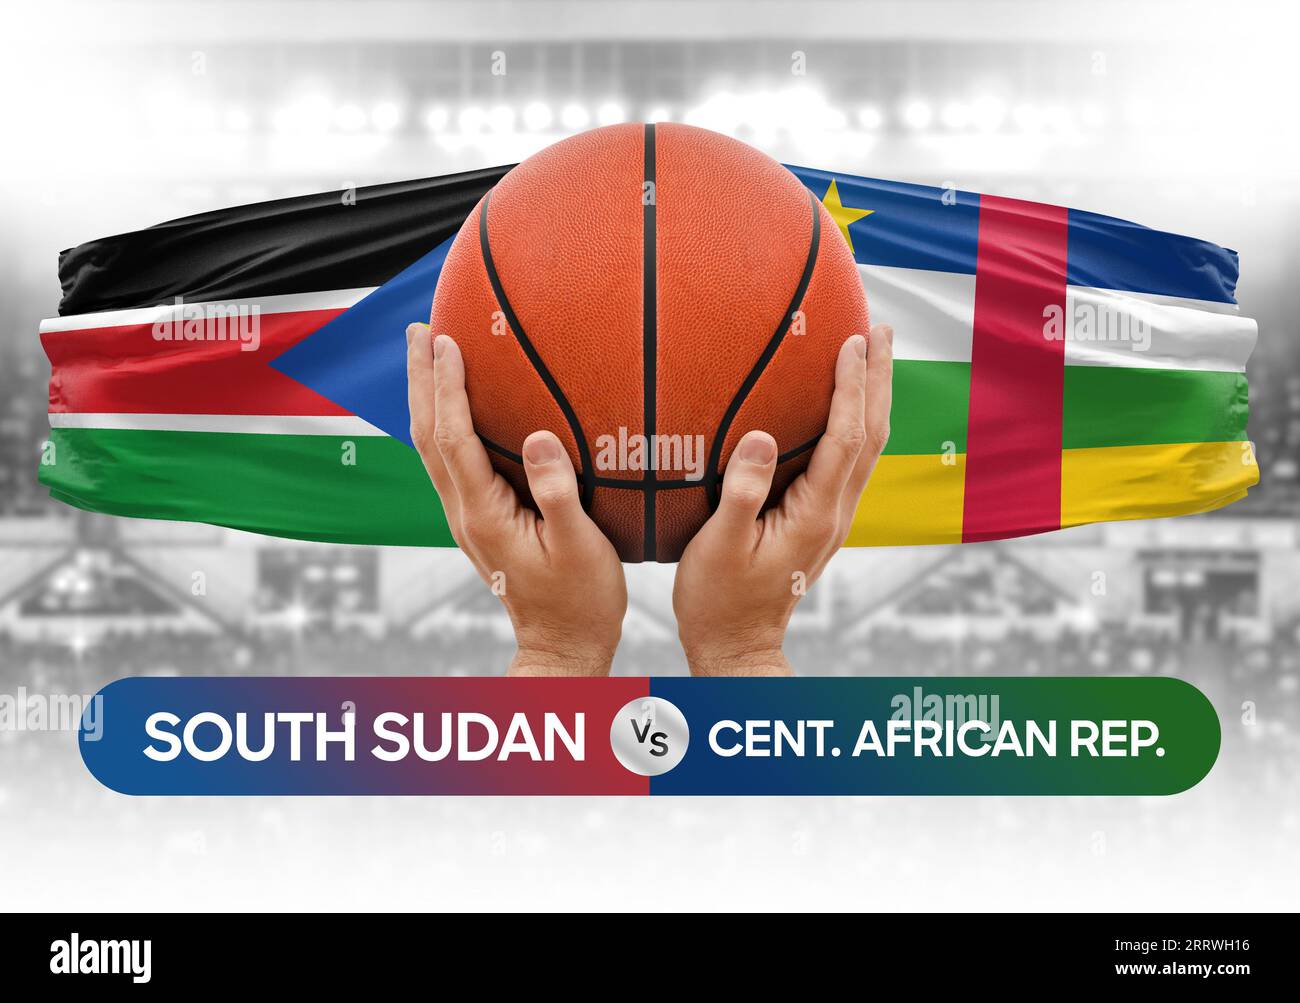 Südsudan vs Zentralafrikanische Republik nationale Basketballmannschaften Basketballspiel Wettbewerb Cup Konzept Bild Stockfoto